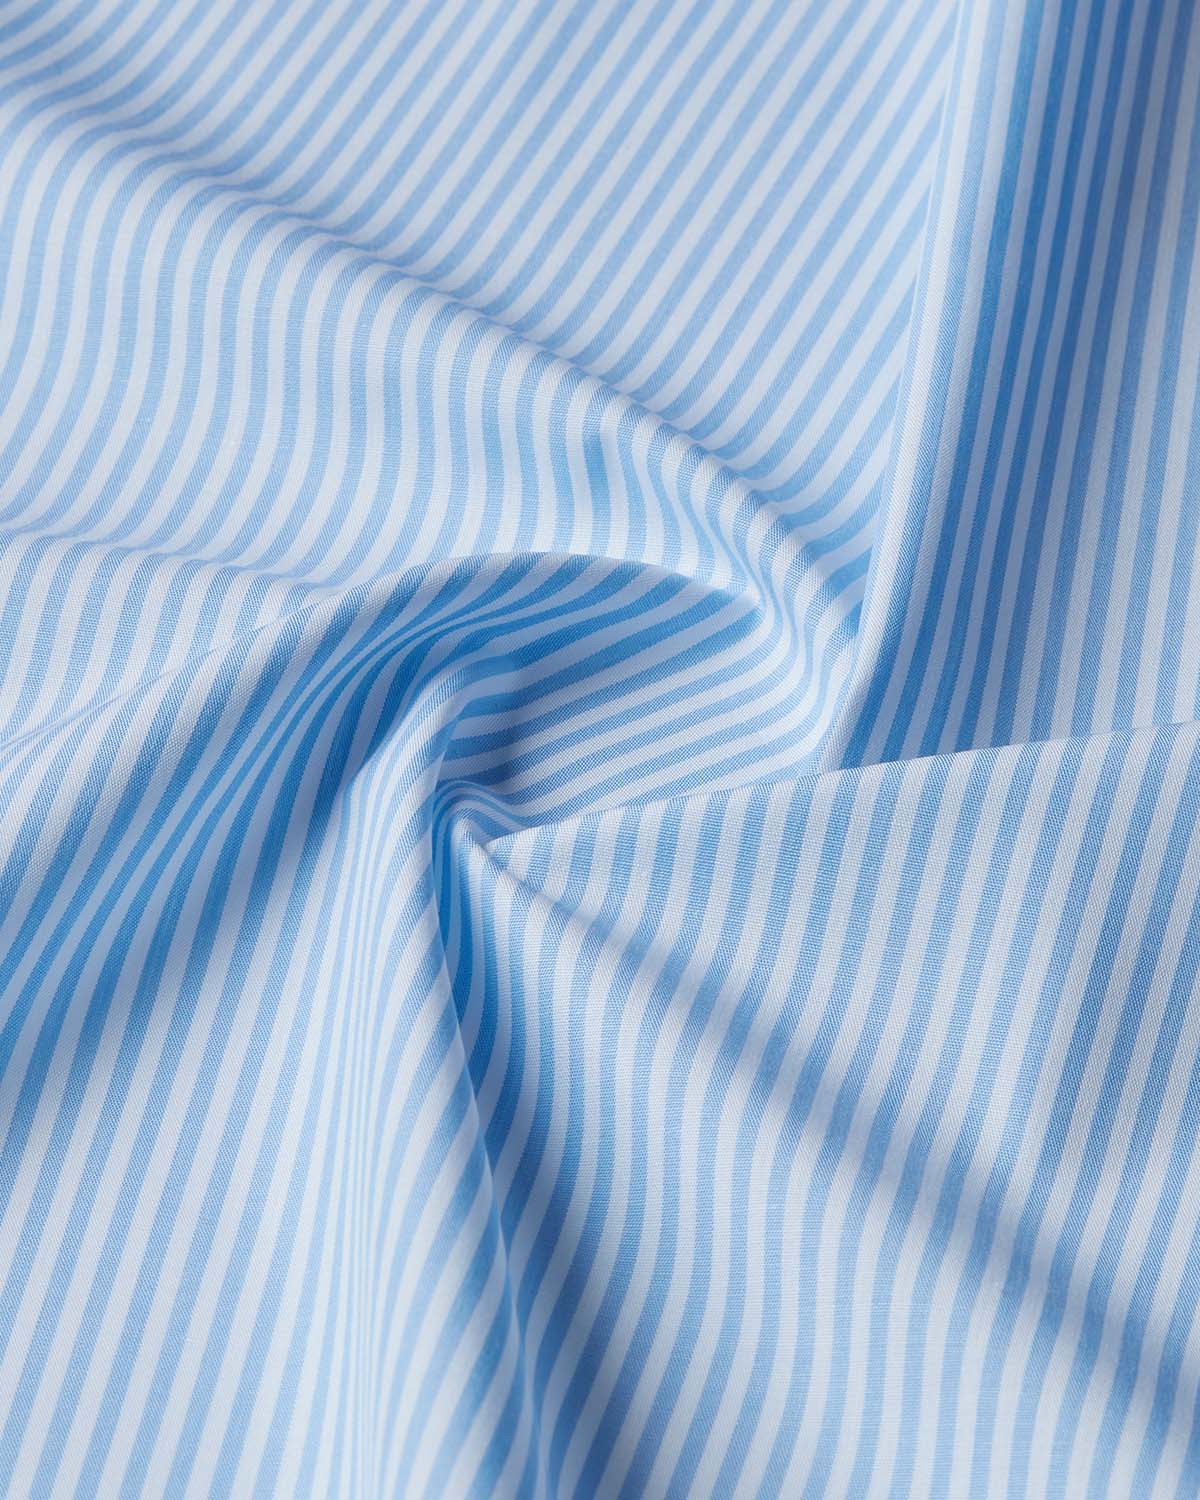 Bengal Striped Shirt - Light Blue